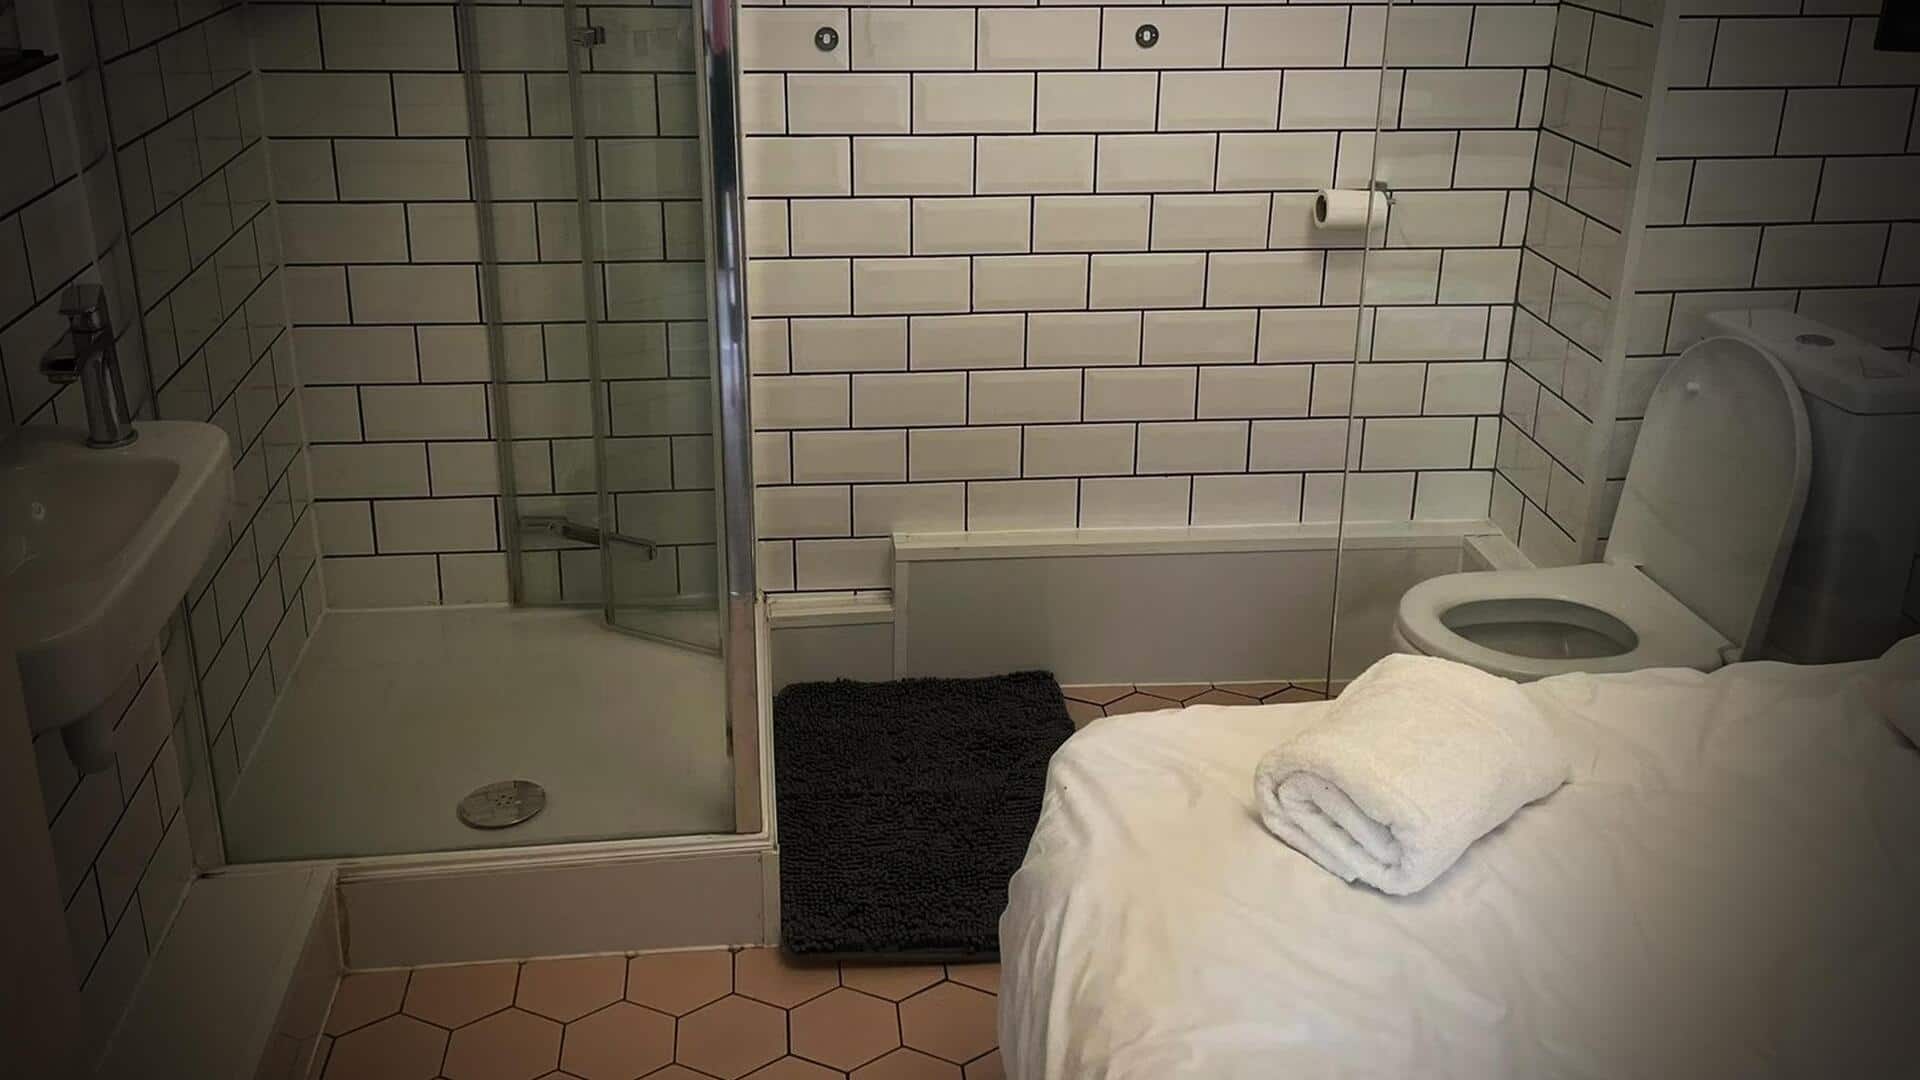 युवक ने शेयर की टॉयलेट के साथ बेड की तस्वीर, सोशल मीडिया यूजर्स हुए हैरान 